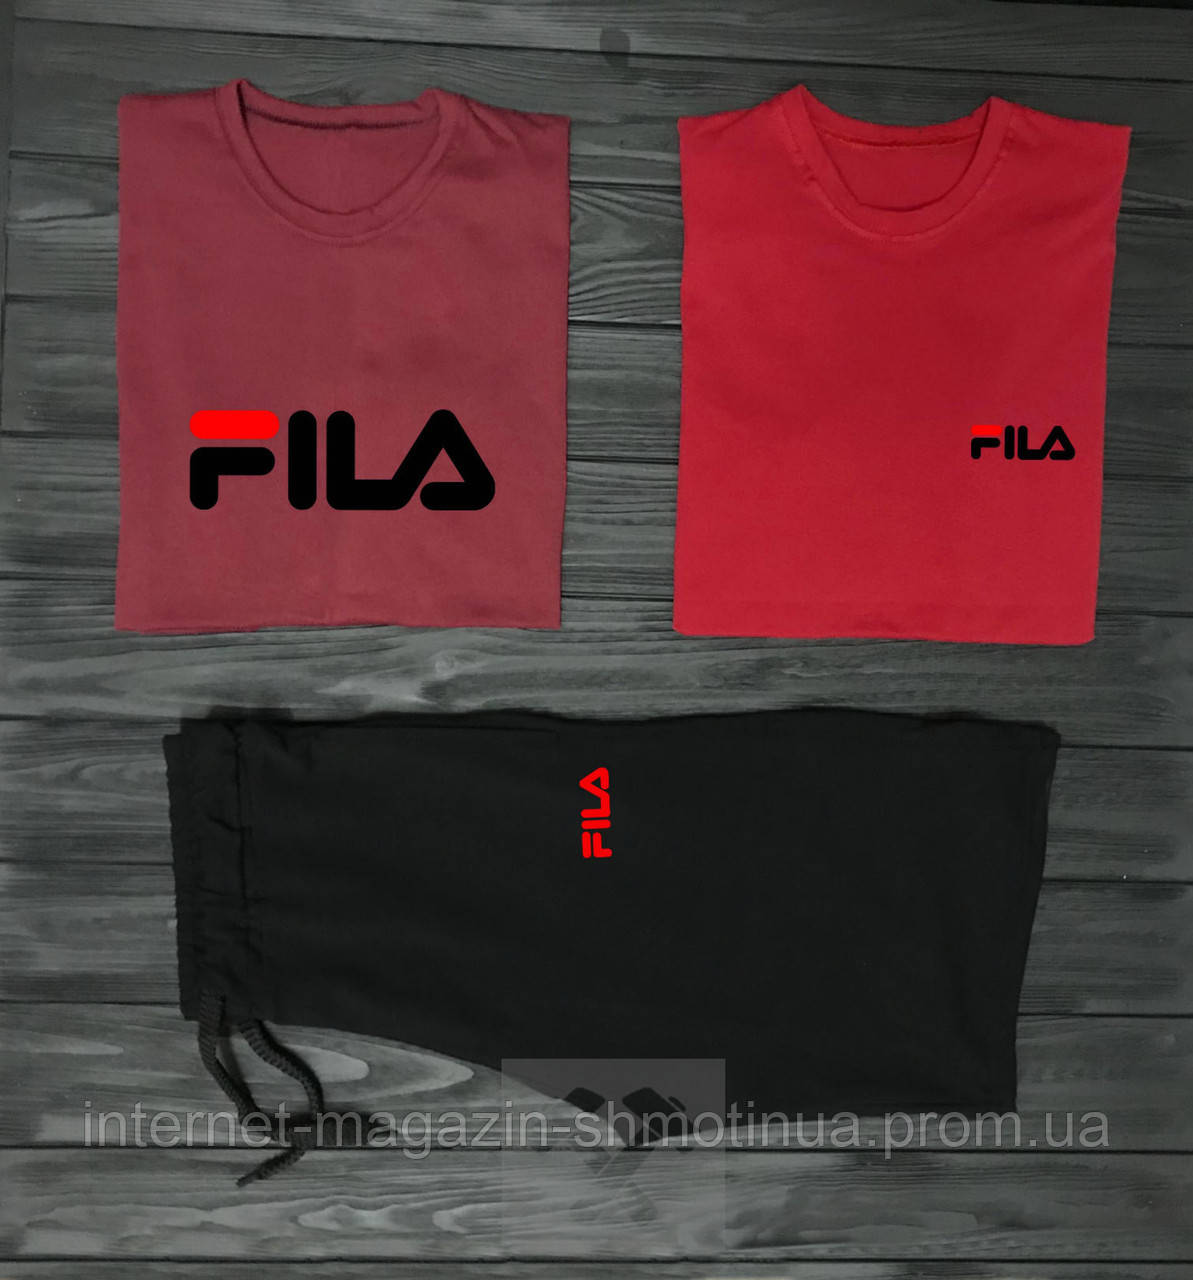 Чоловічий комплект дві футболки + шорти Fila червоного і чорного кольору (люкс) S